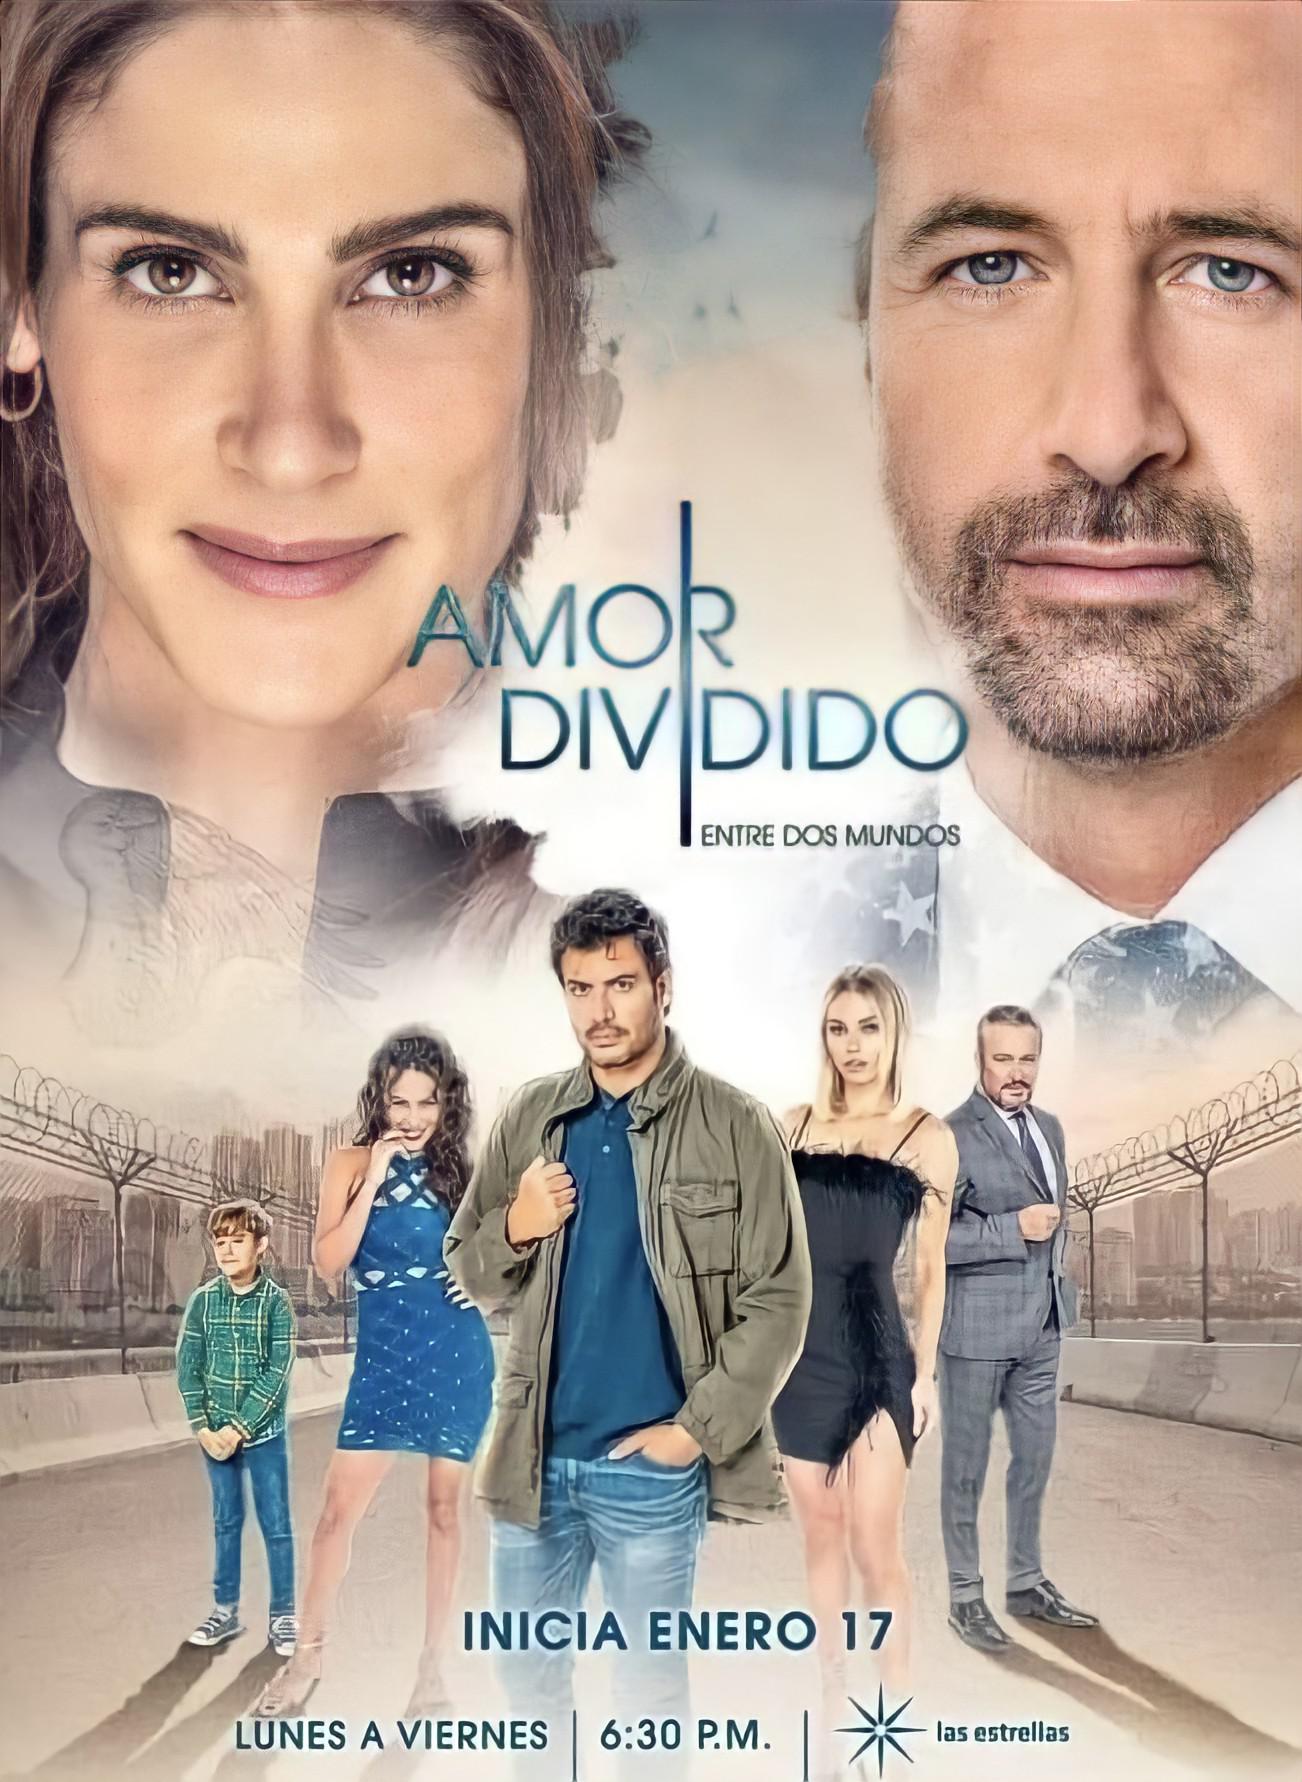 TV ratings for Amor Dividido in Turkey. Las Estrellas TV series